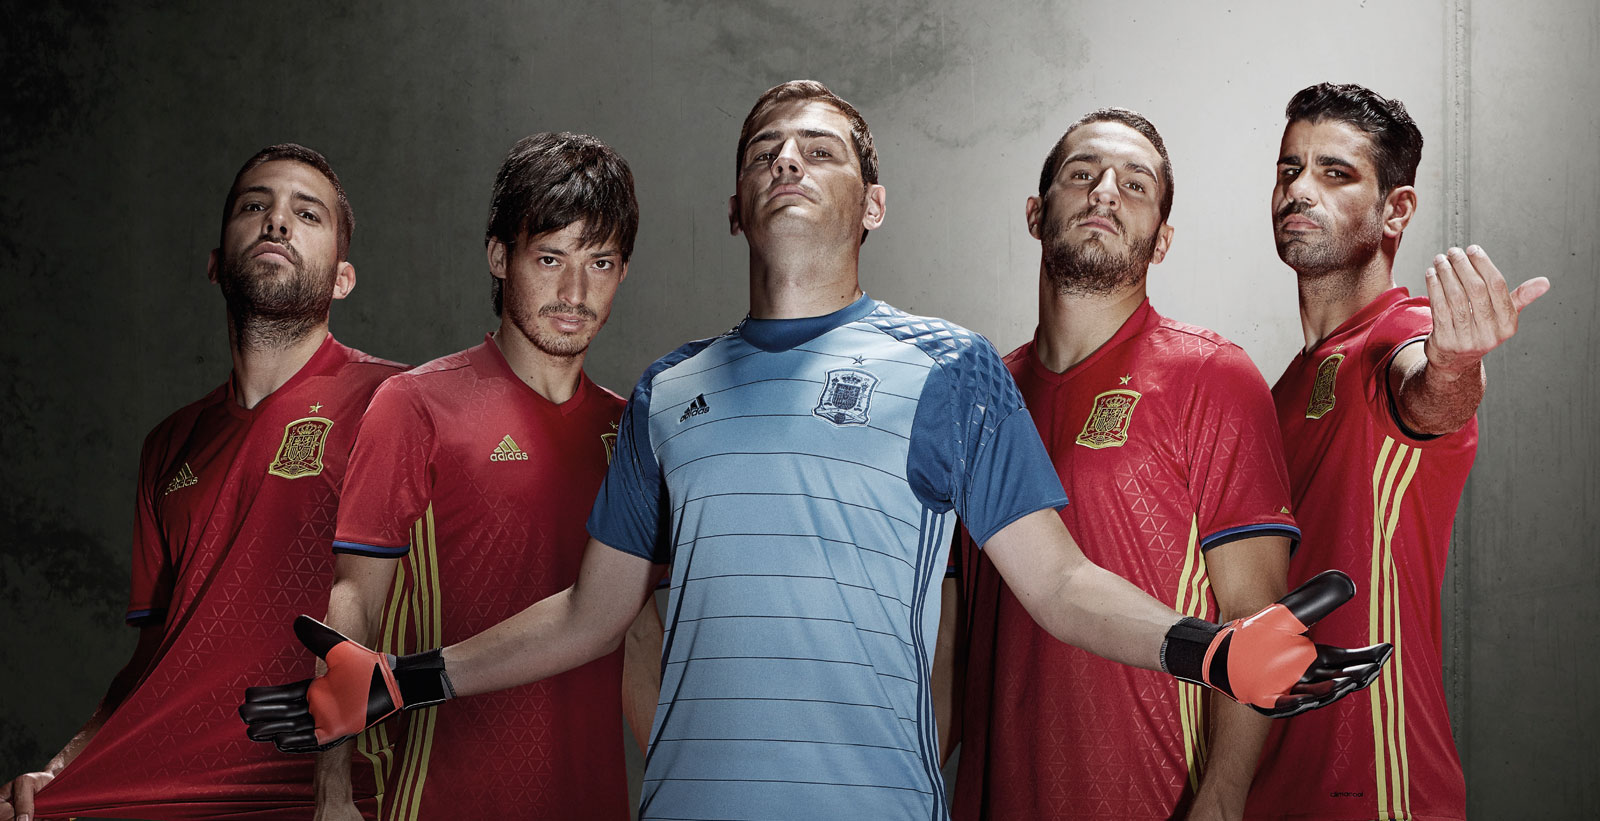 Spanien EM 2016 Heim-Trikot veröffentlicht - Nur Fussball